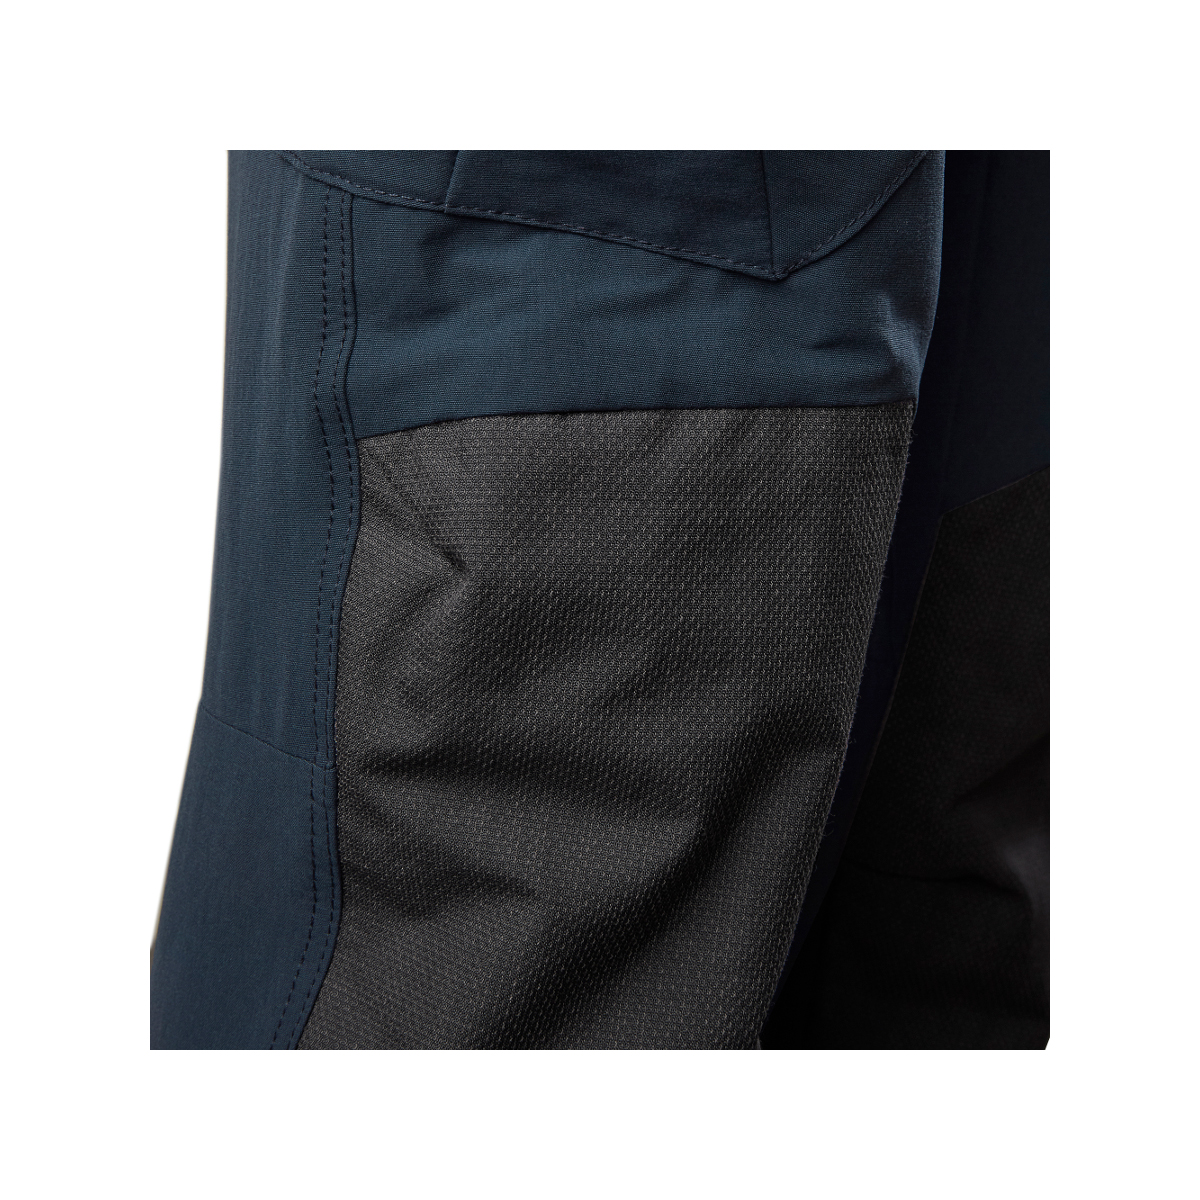 Musto Evolution Performance pantalon de voile 2.0 homme bleu marine, taille 36